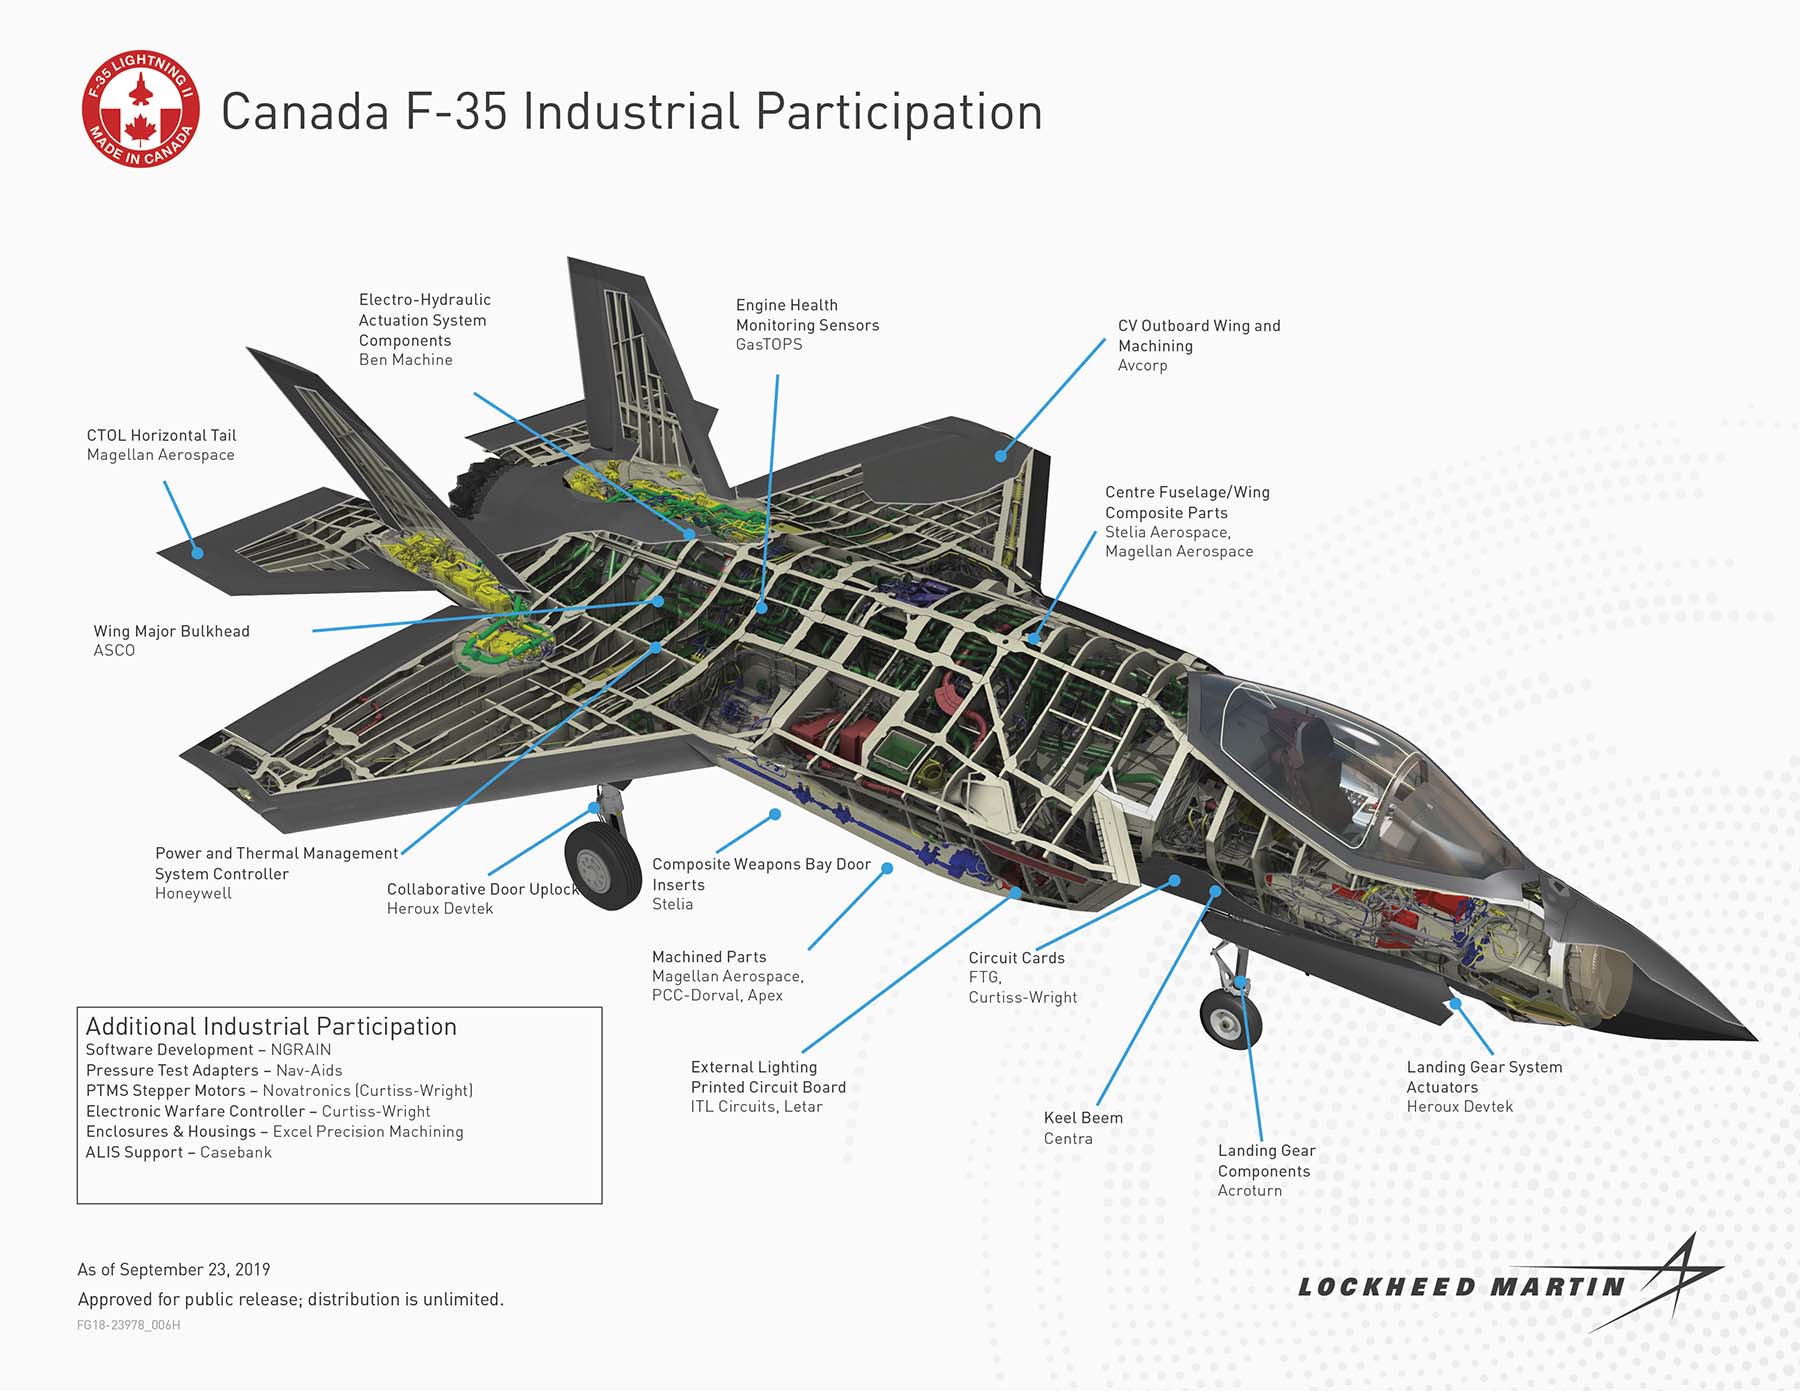 Canada F-35 Participation. Photo: Lockheed Martin